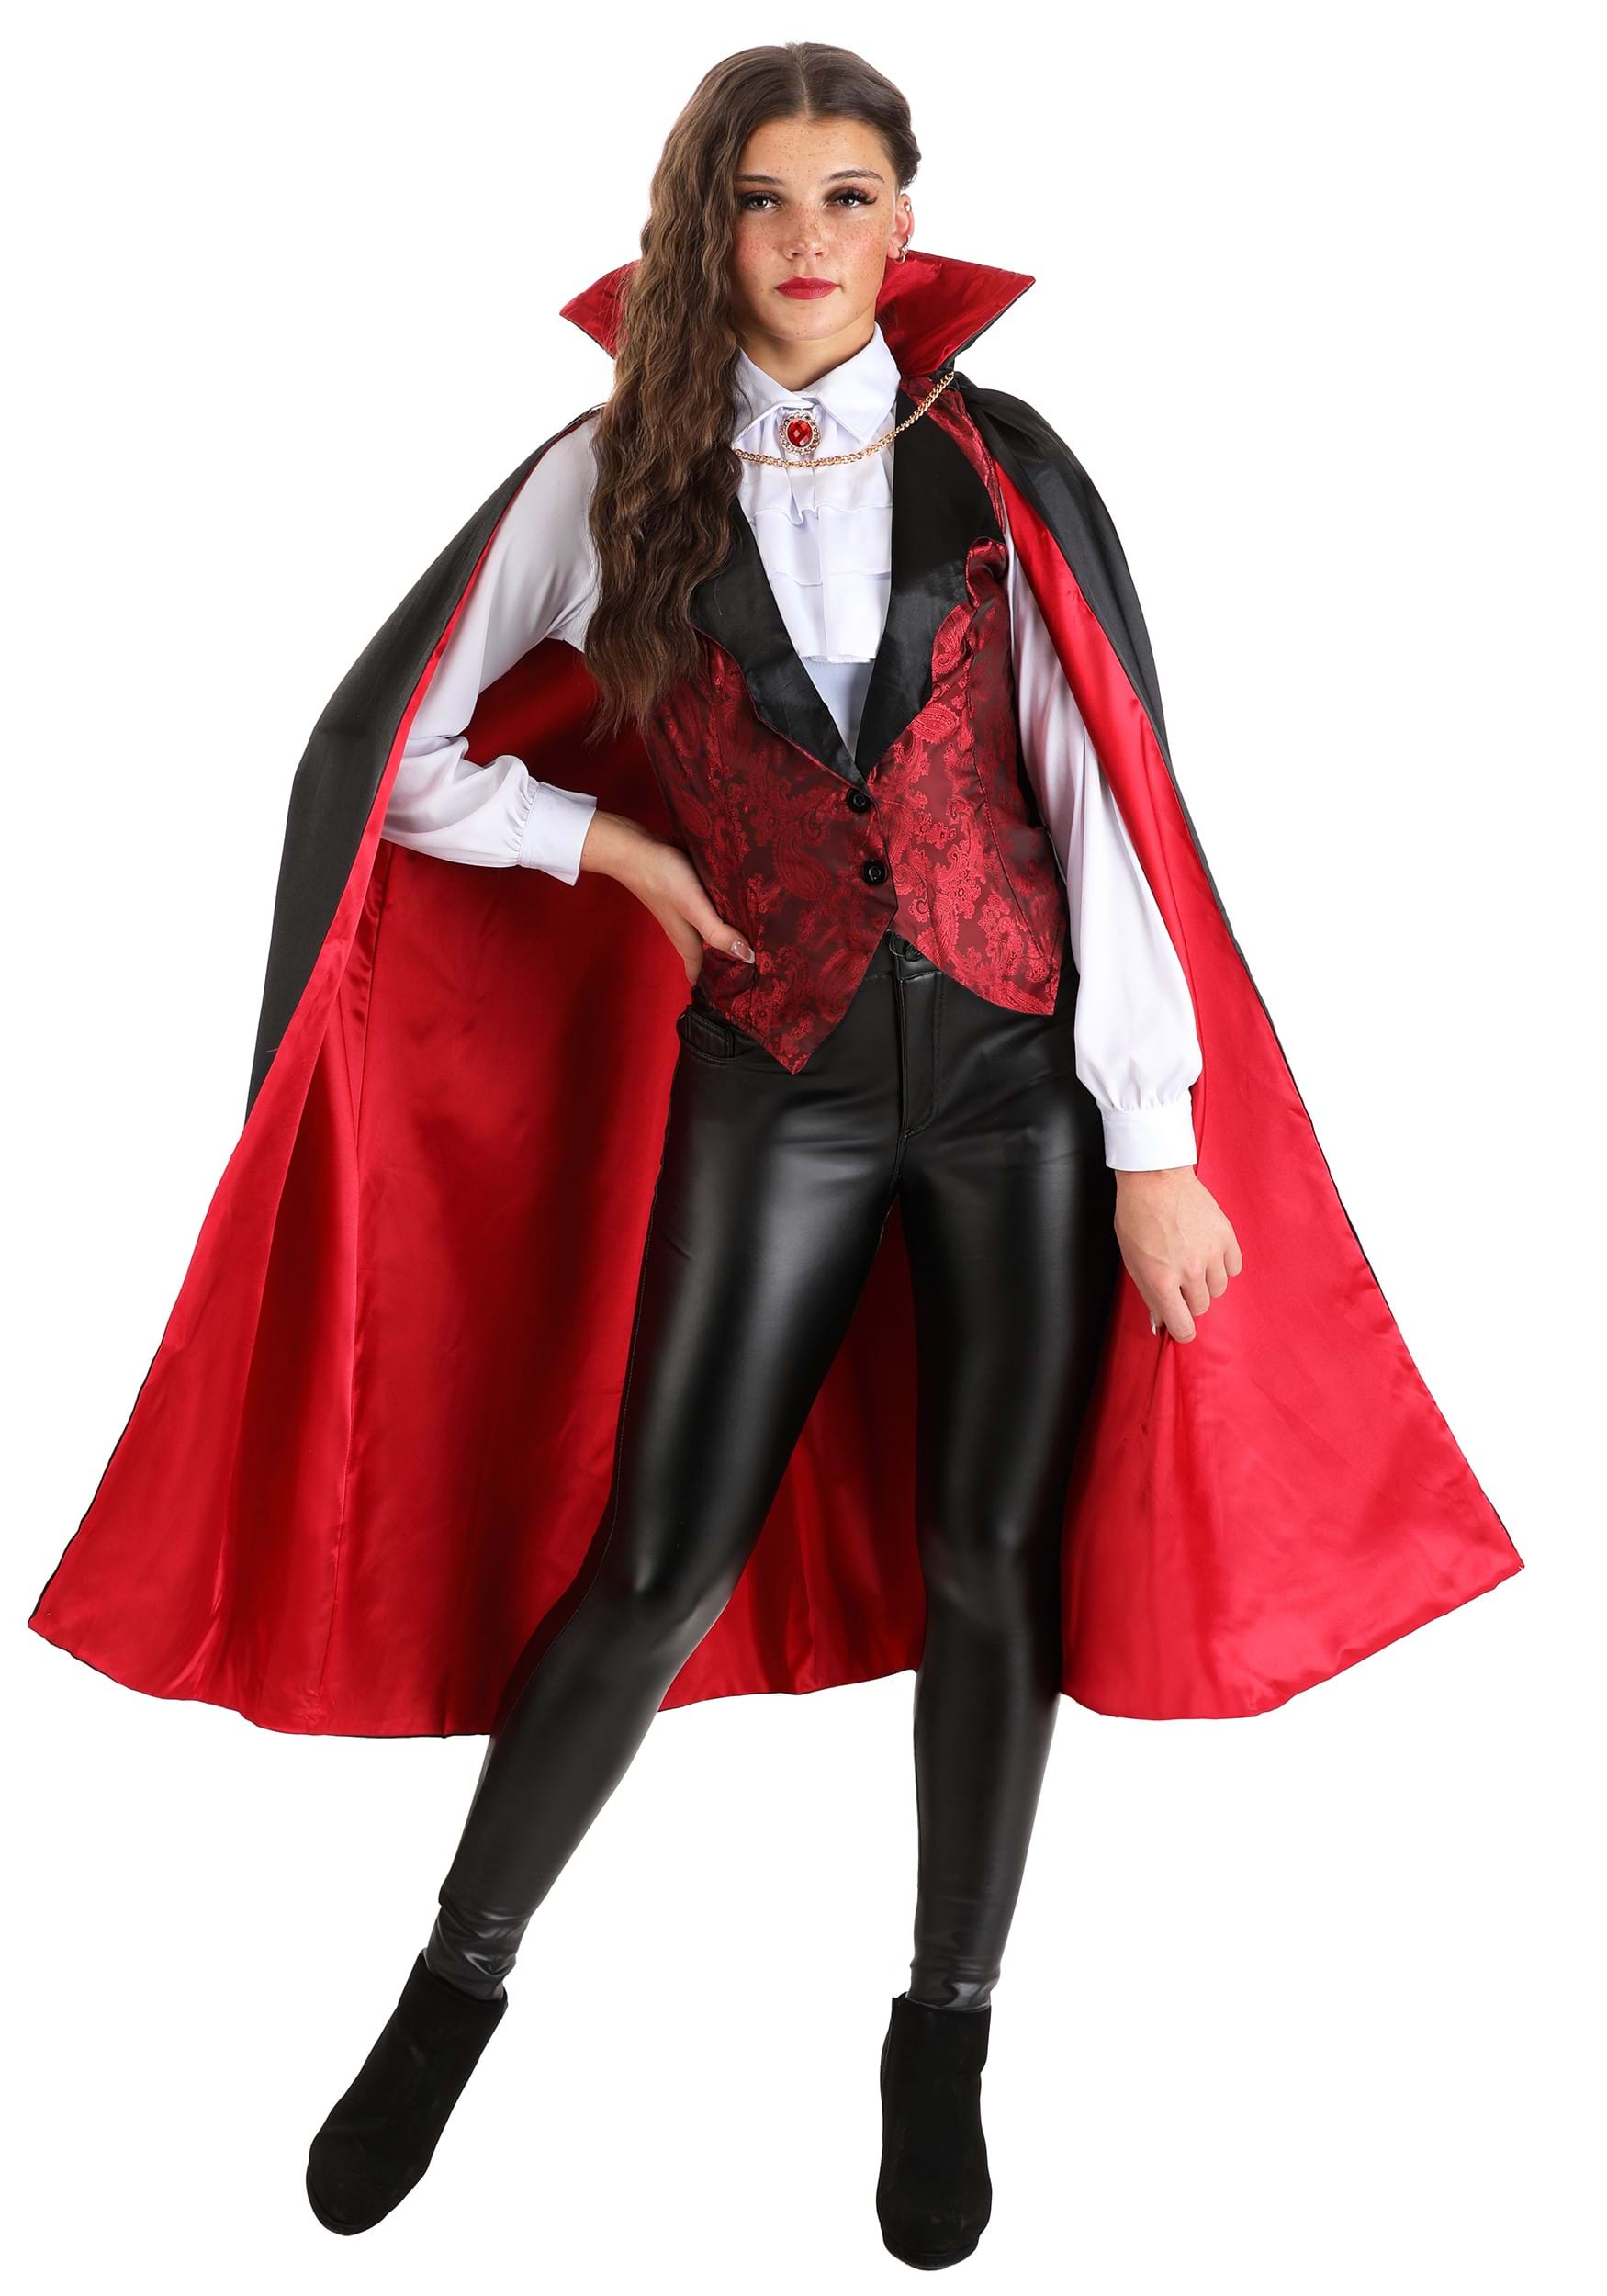 Womens Vampiress Fever Costume Kit - www.bruhm.com.